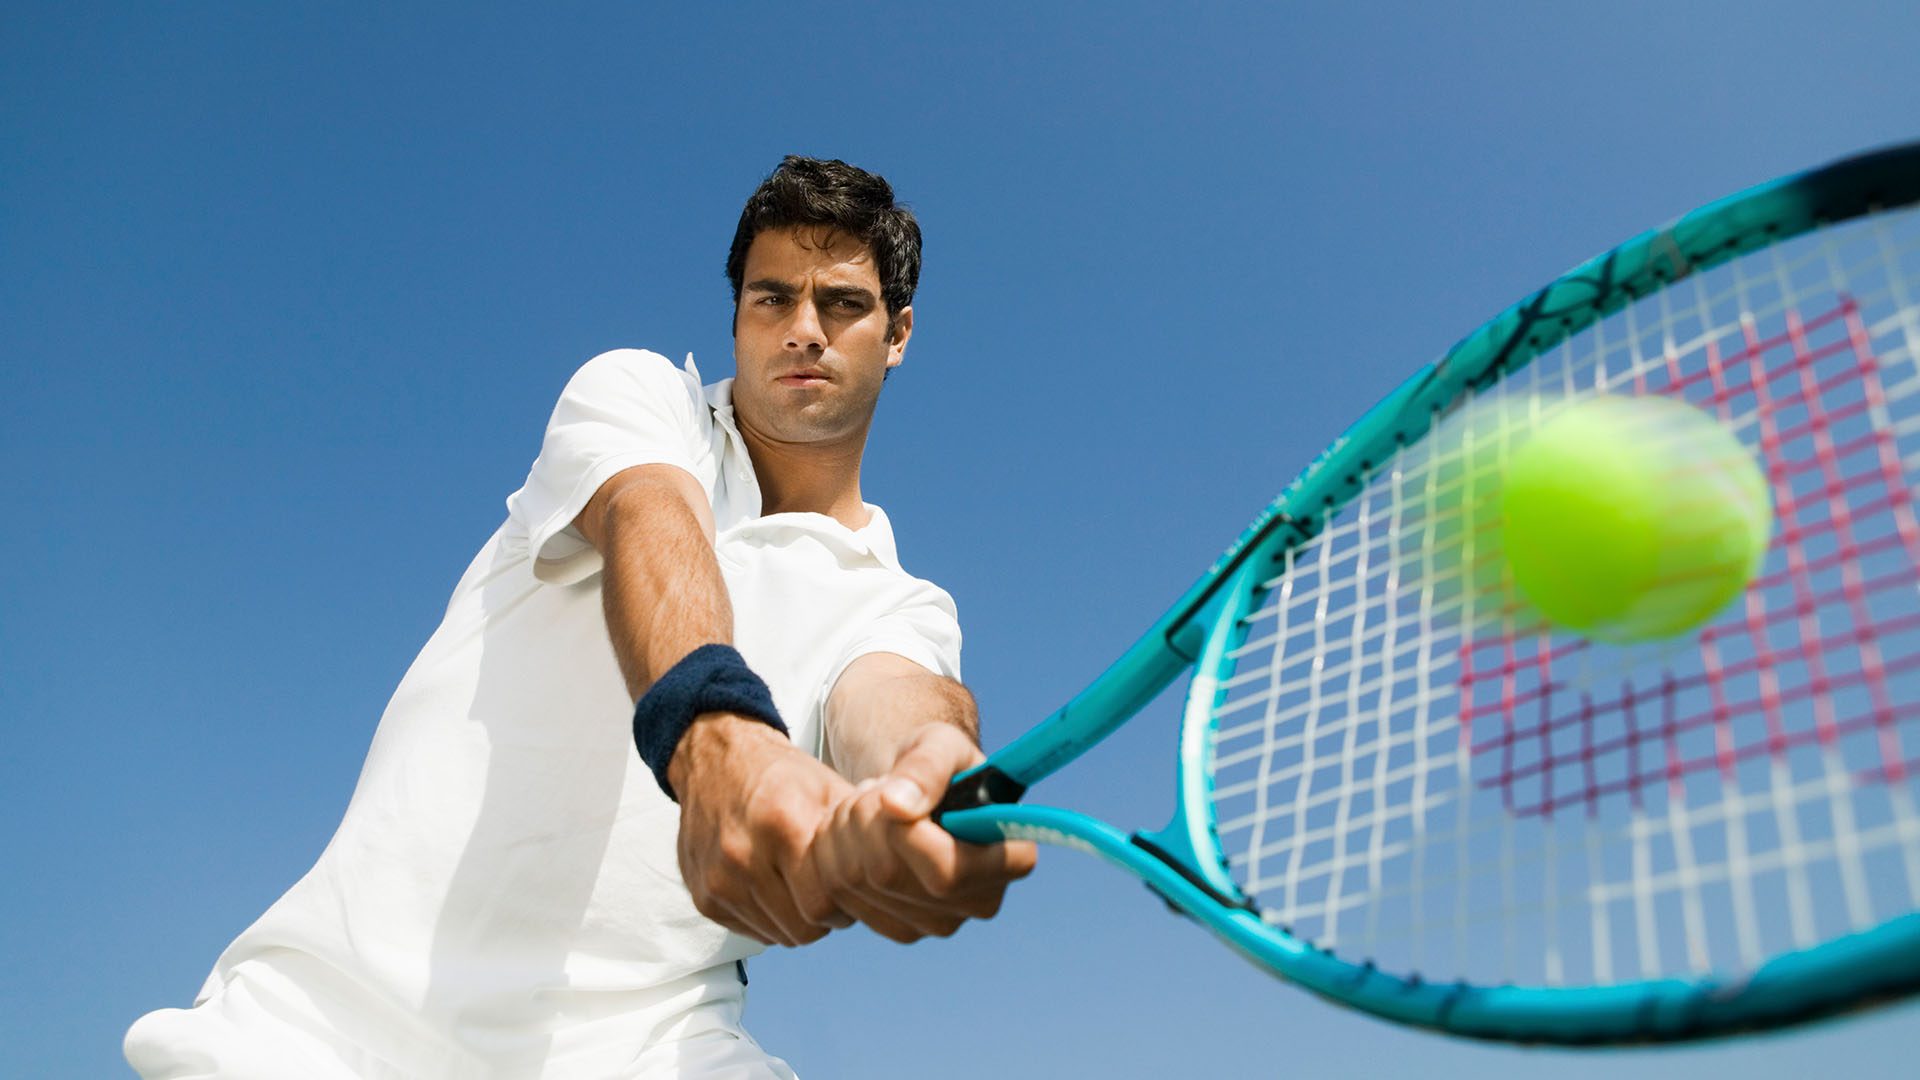 Male tennis player striking a ball